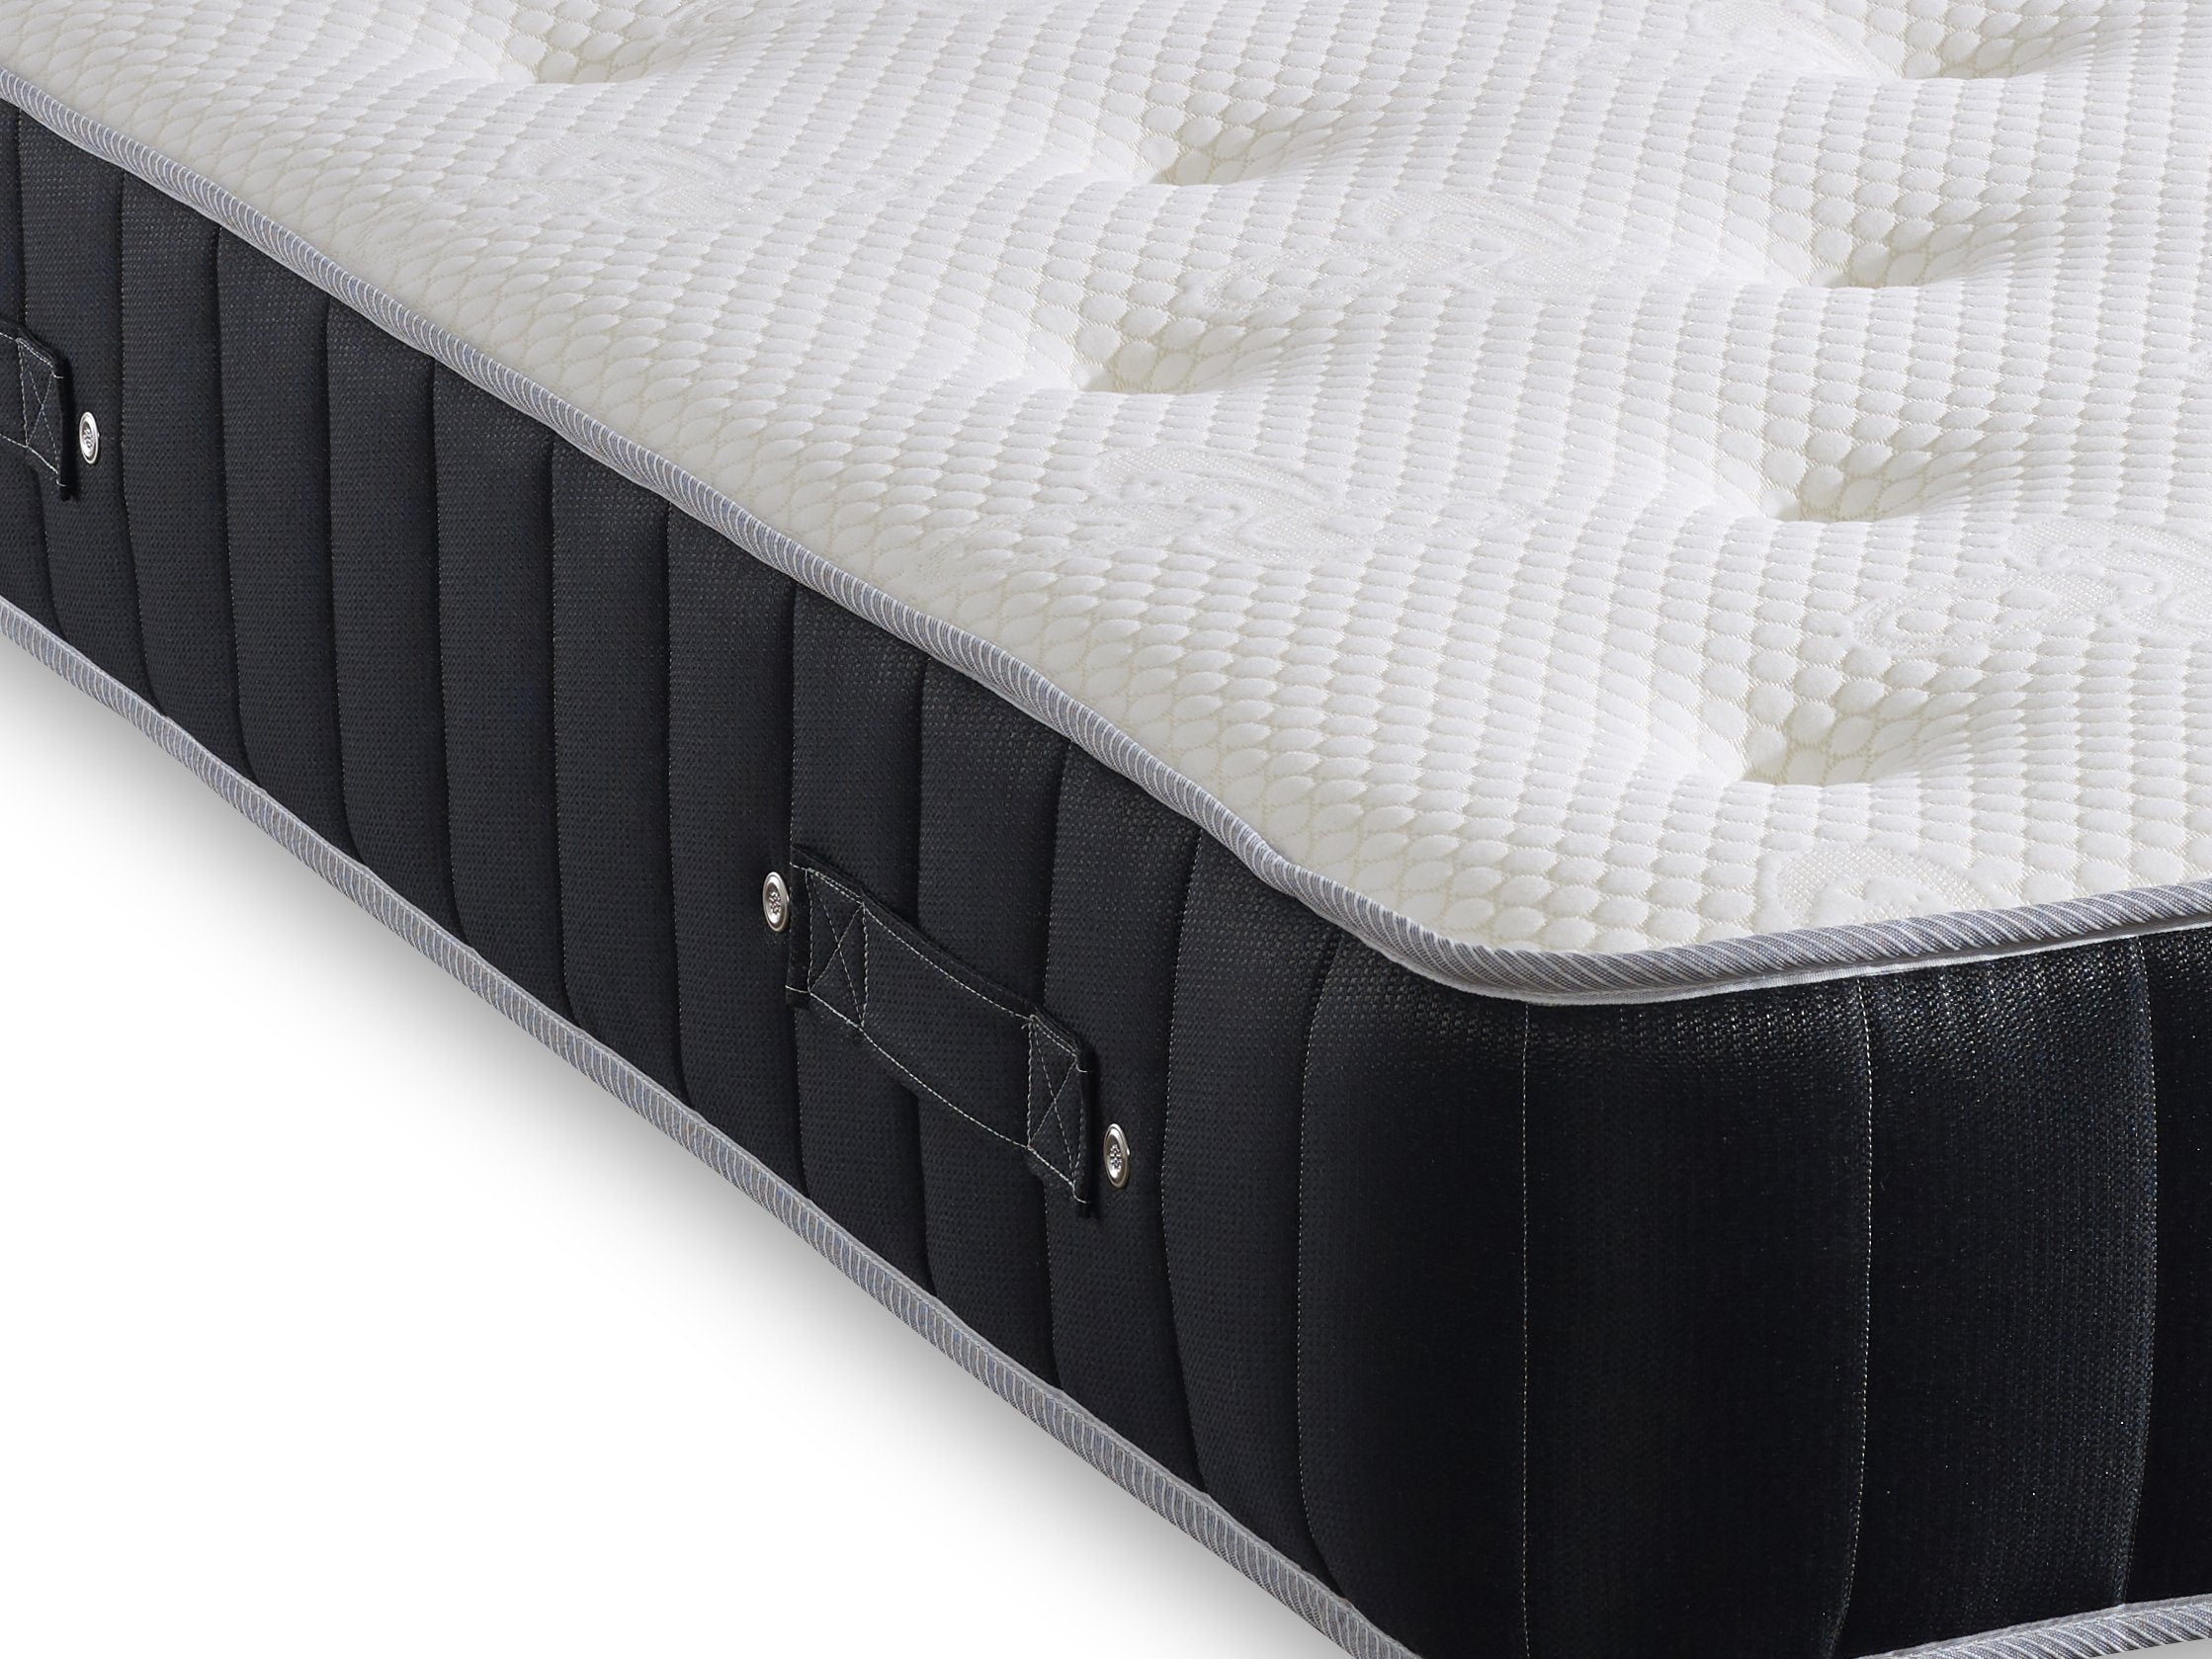 2000 pocket sprung memory foam mattress divan